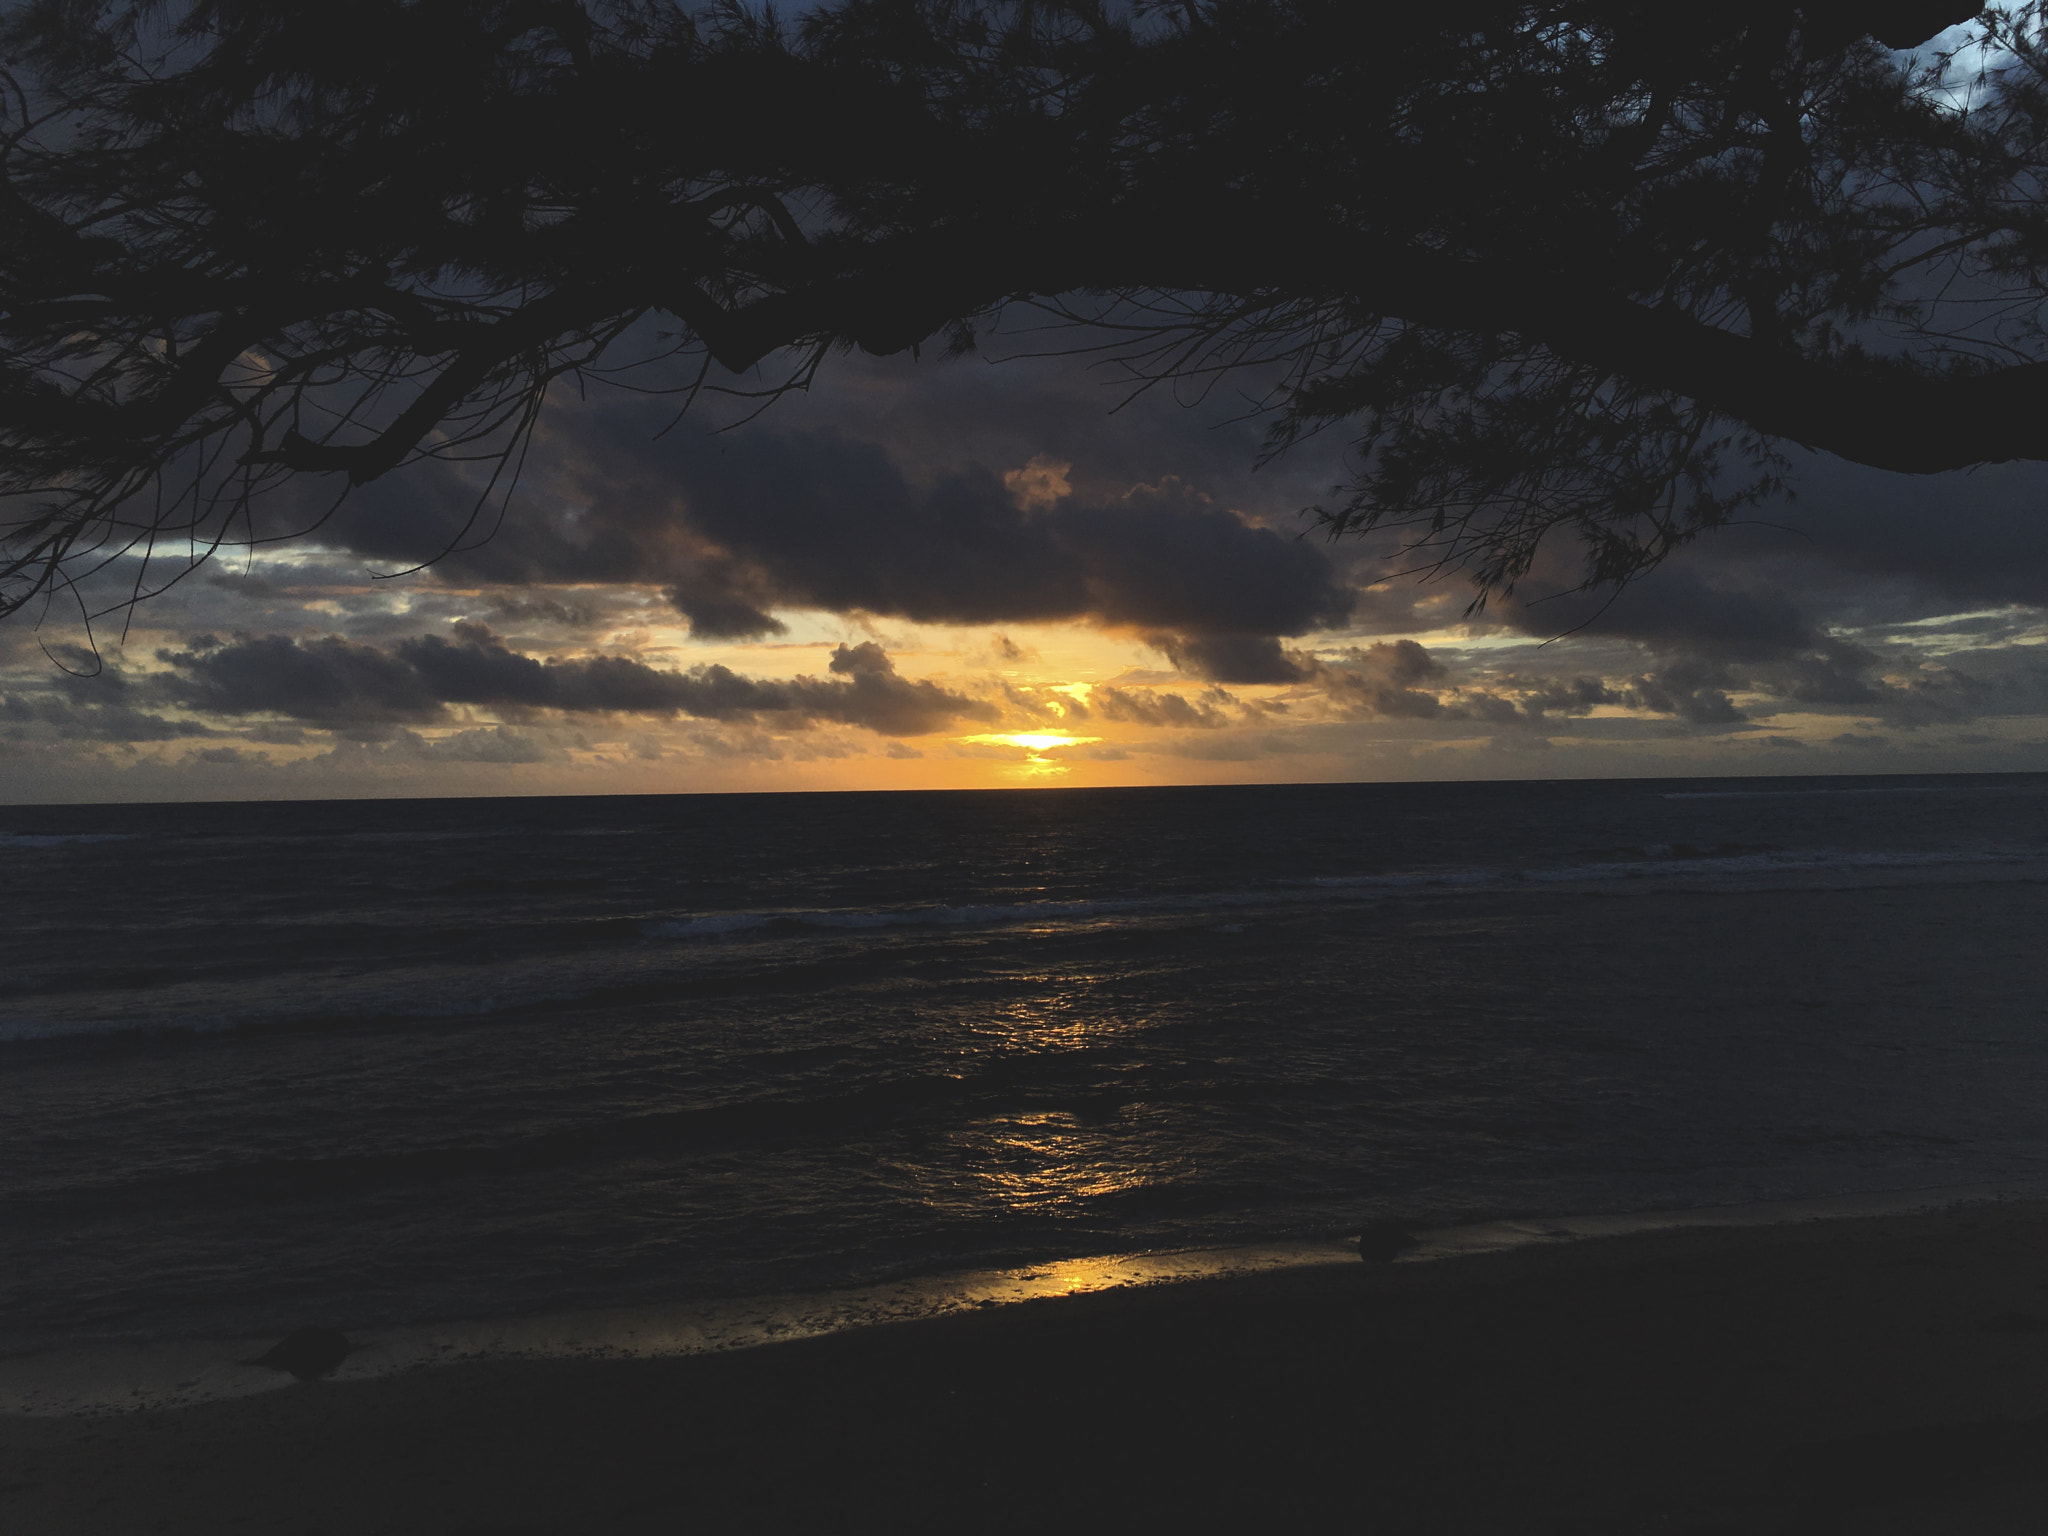 Apple iPad Pro sample photo. Hawaiian sunset photography